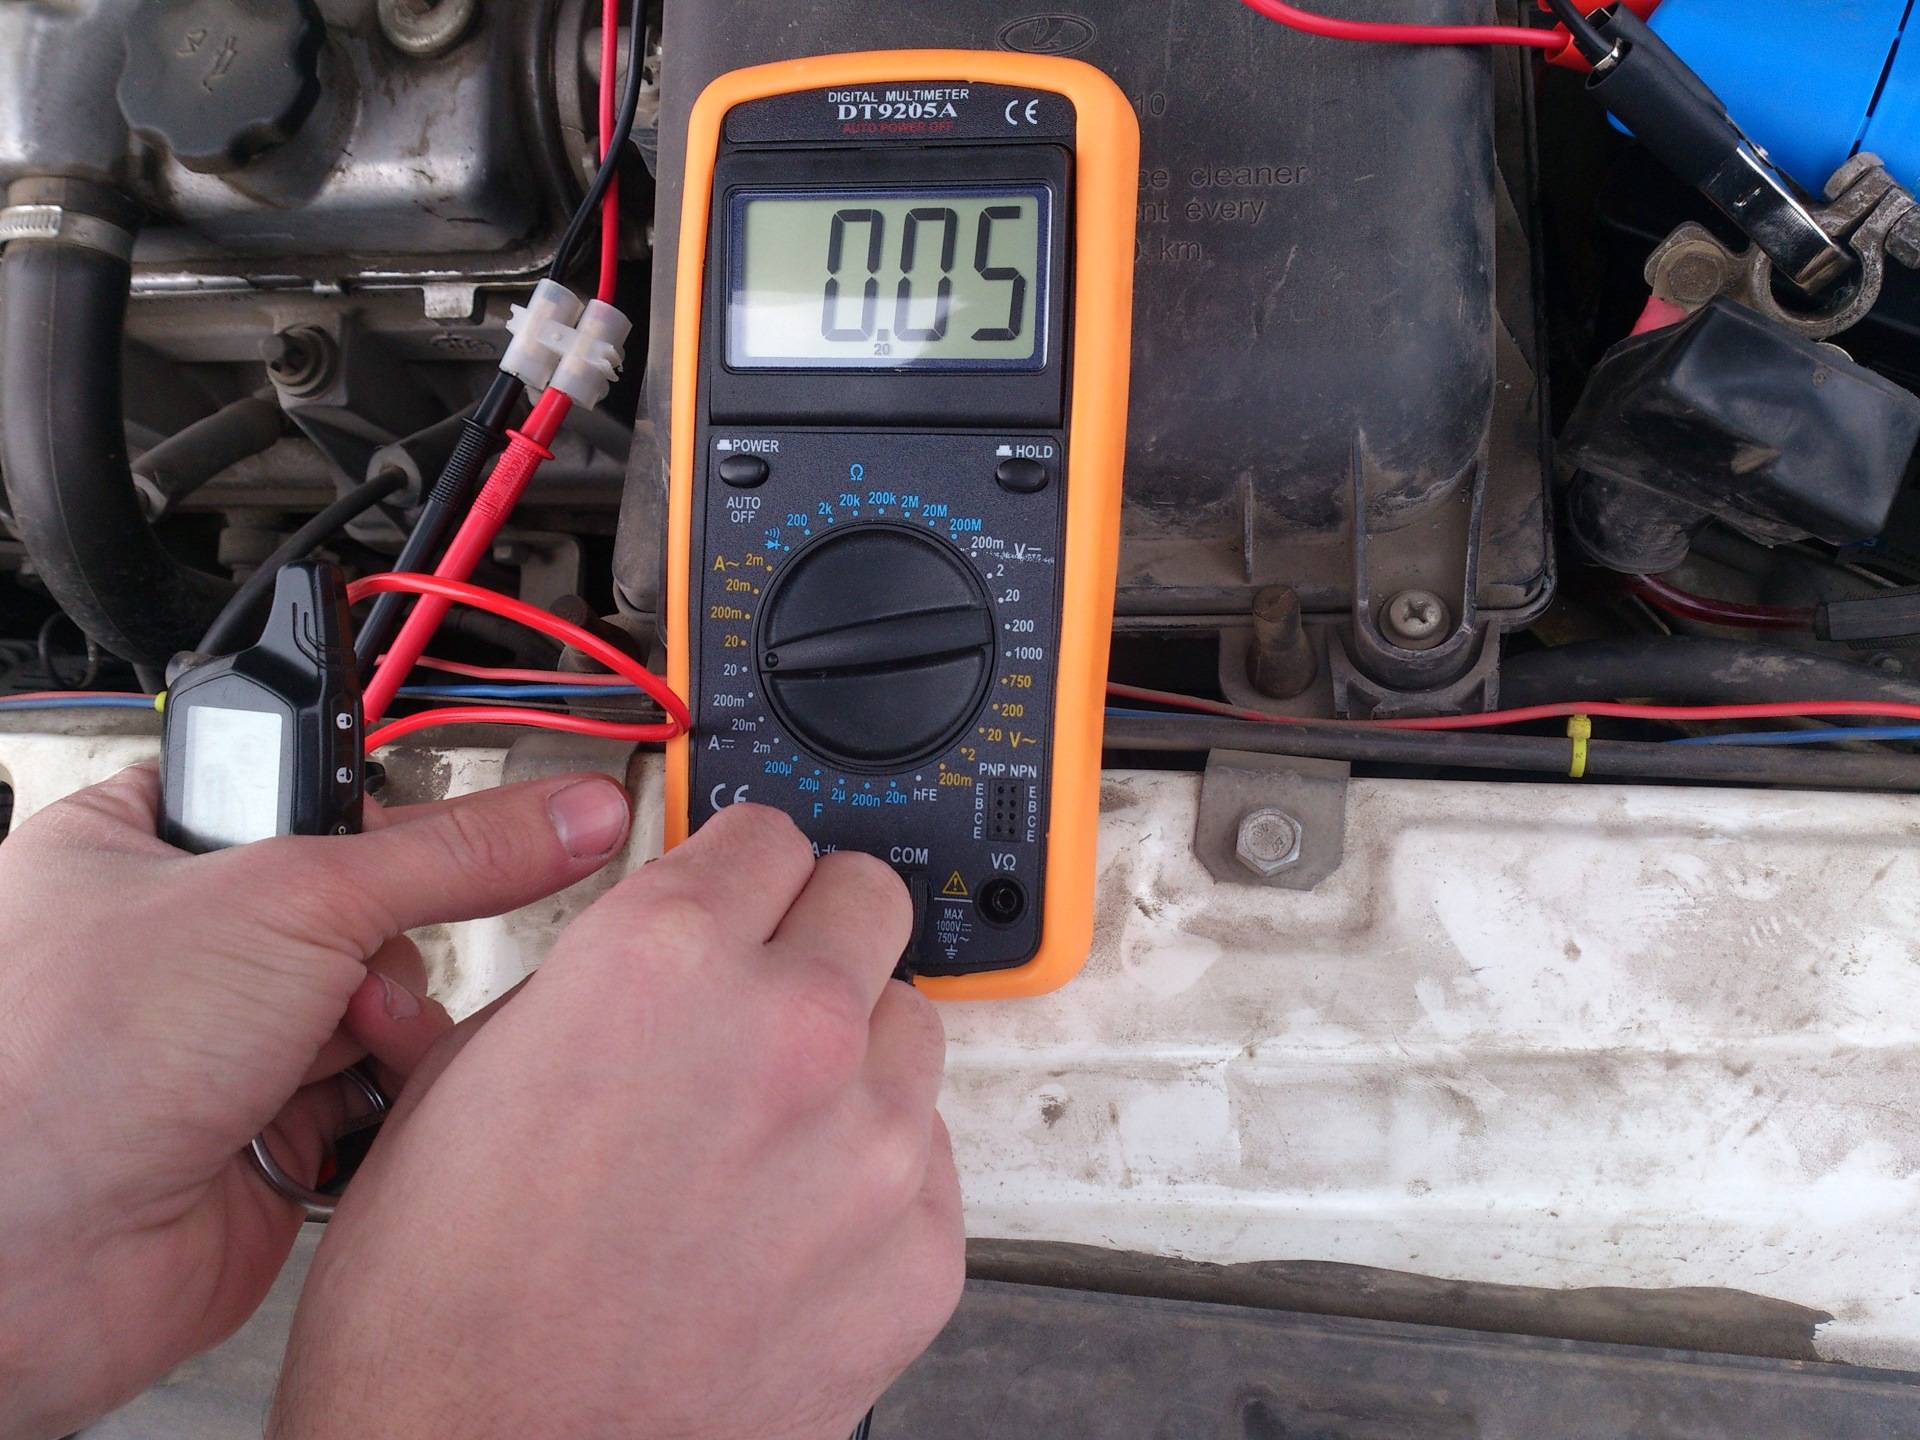 Какова норма тока утечки аккумулятора автомобиля и как его измерить?